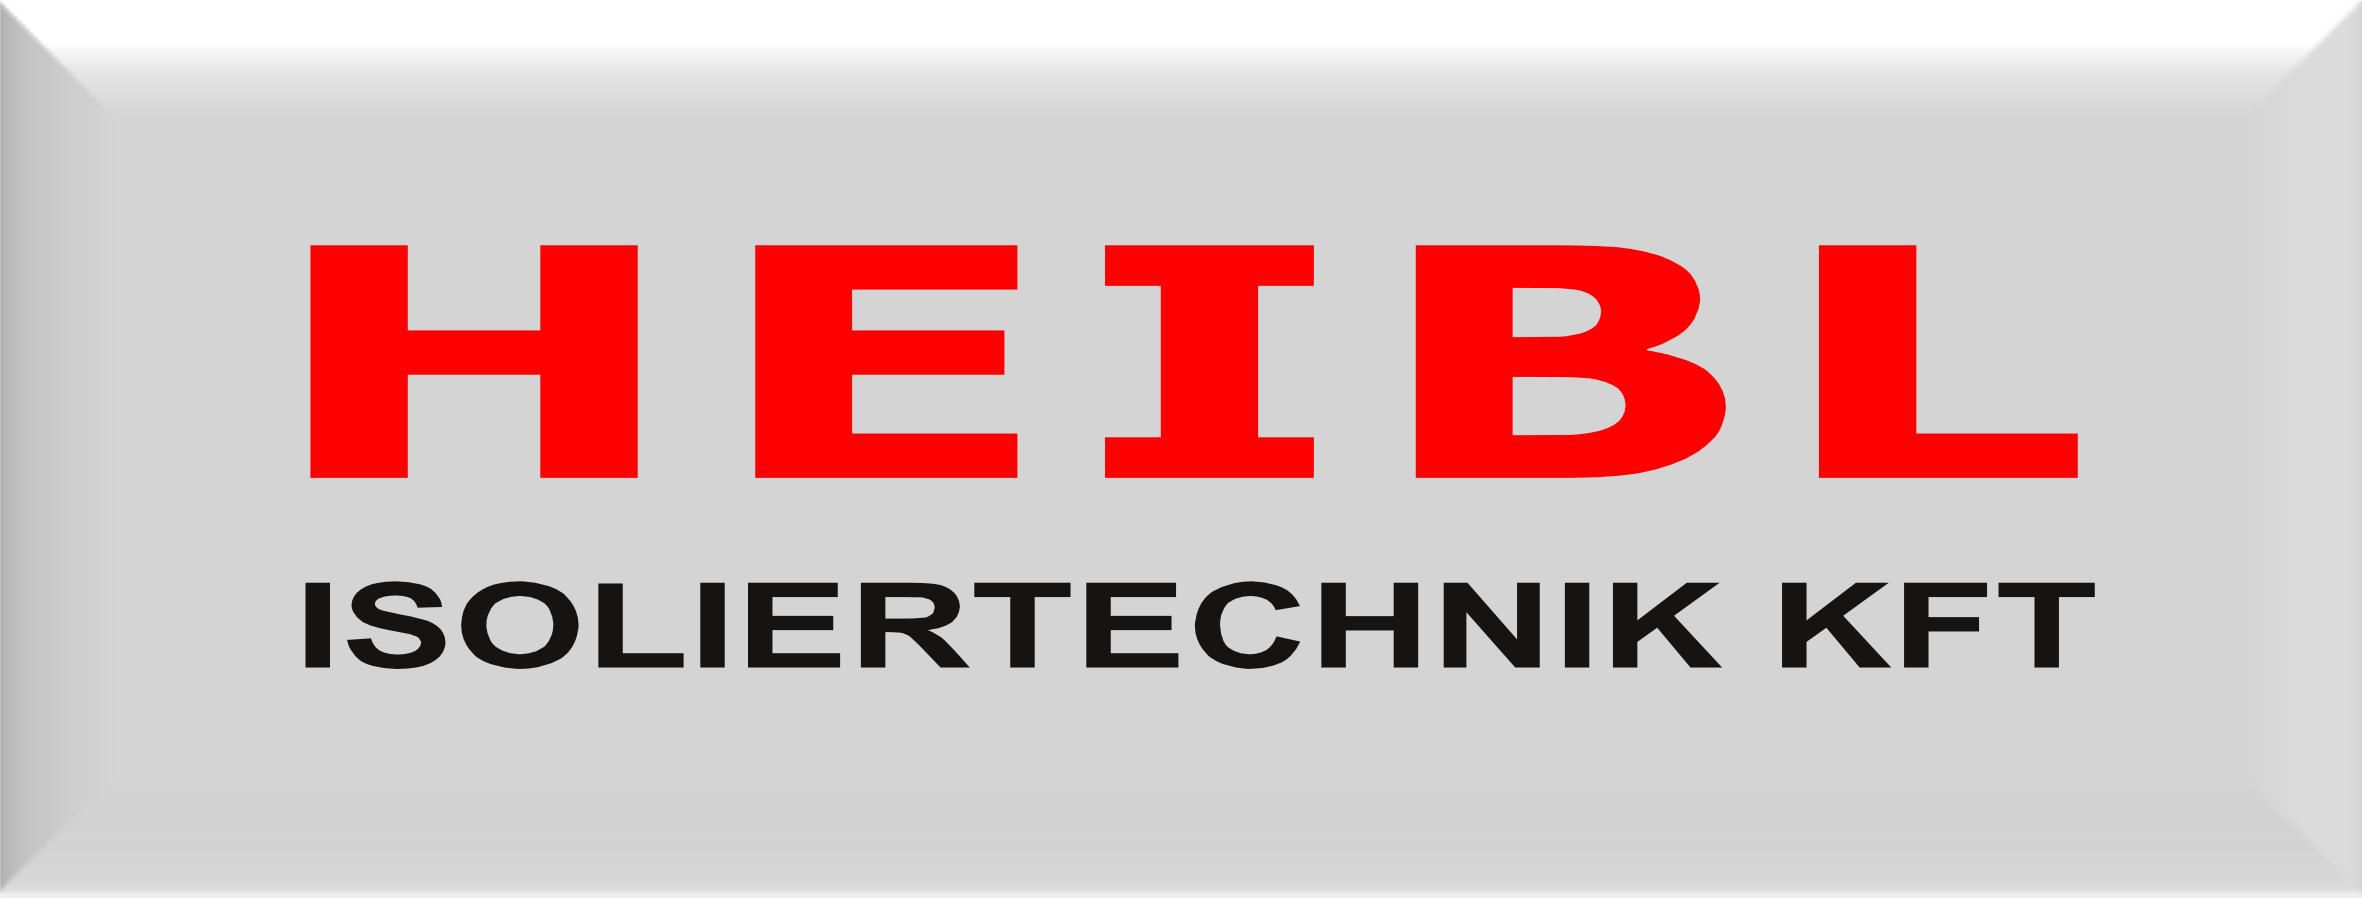 heibl-logo.jpg